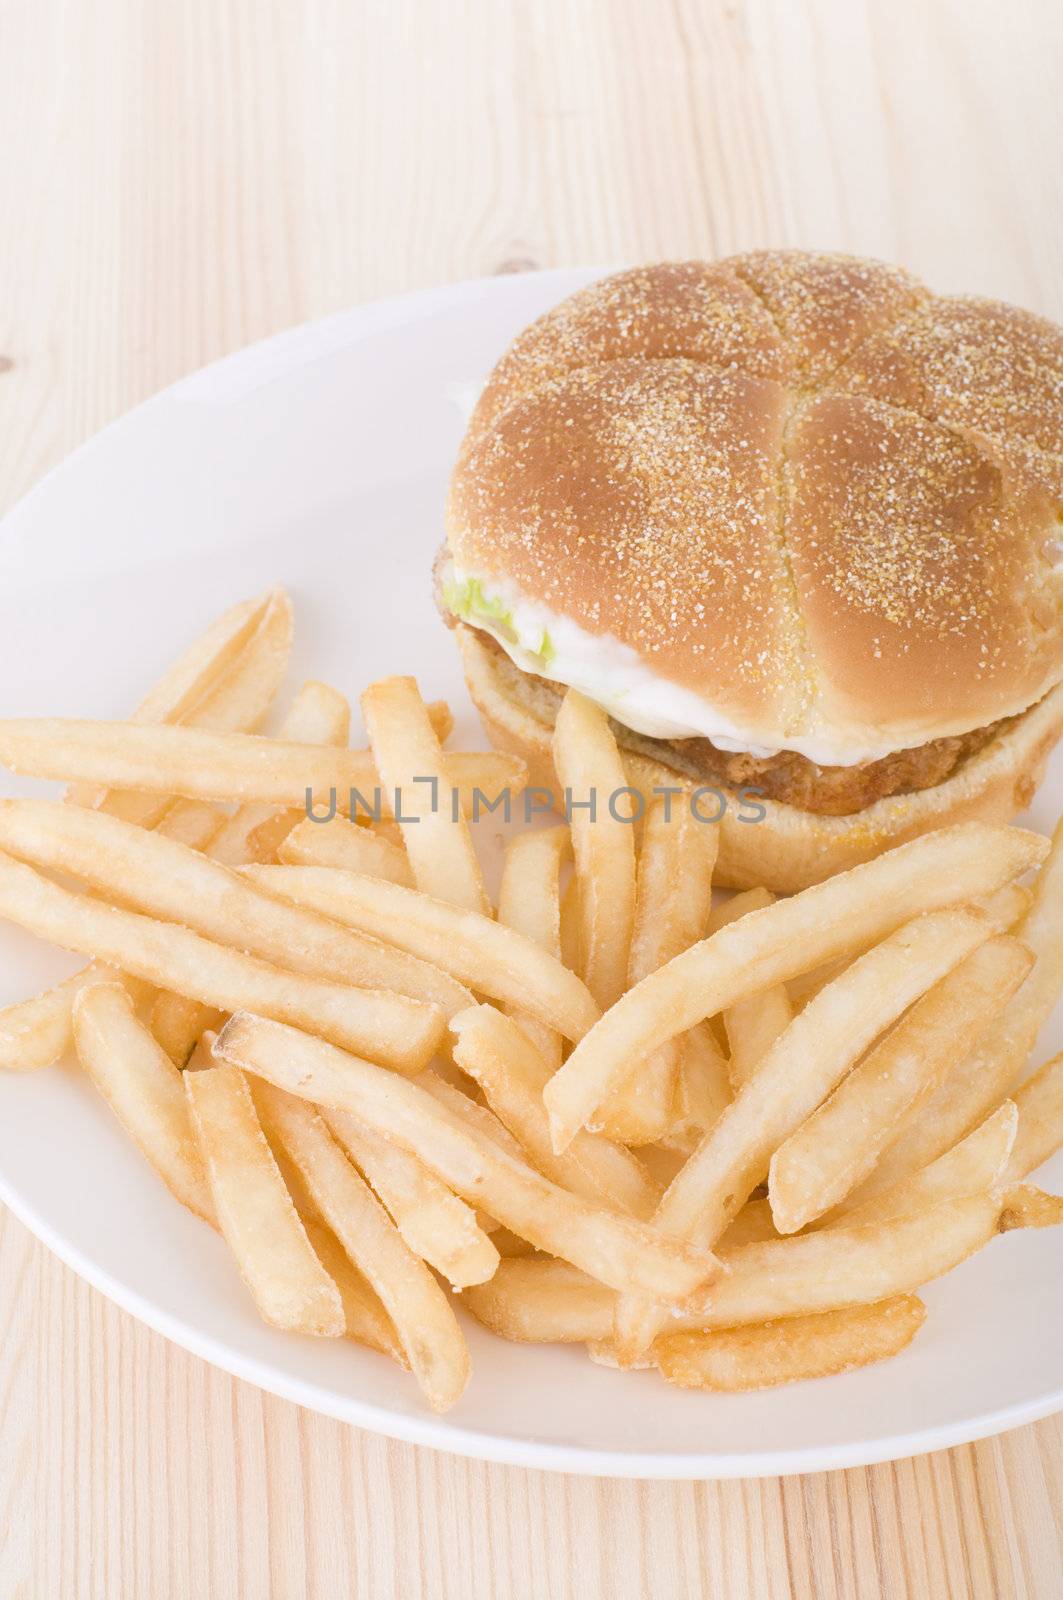 burger and chips  by yuliang11